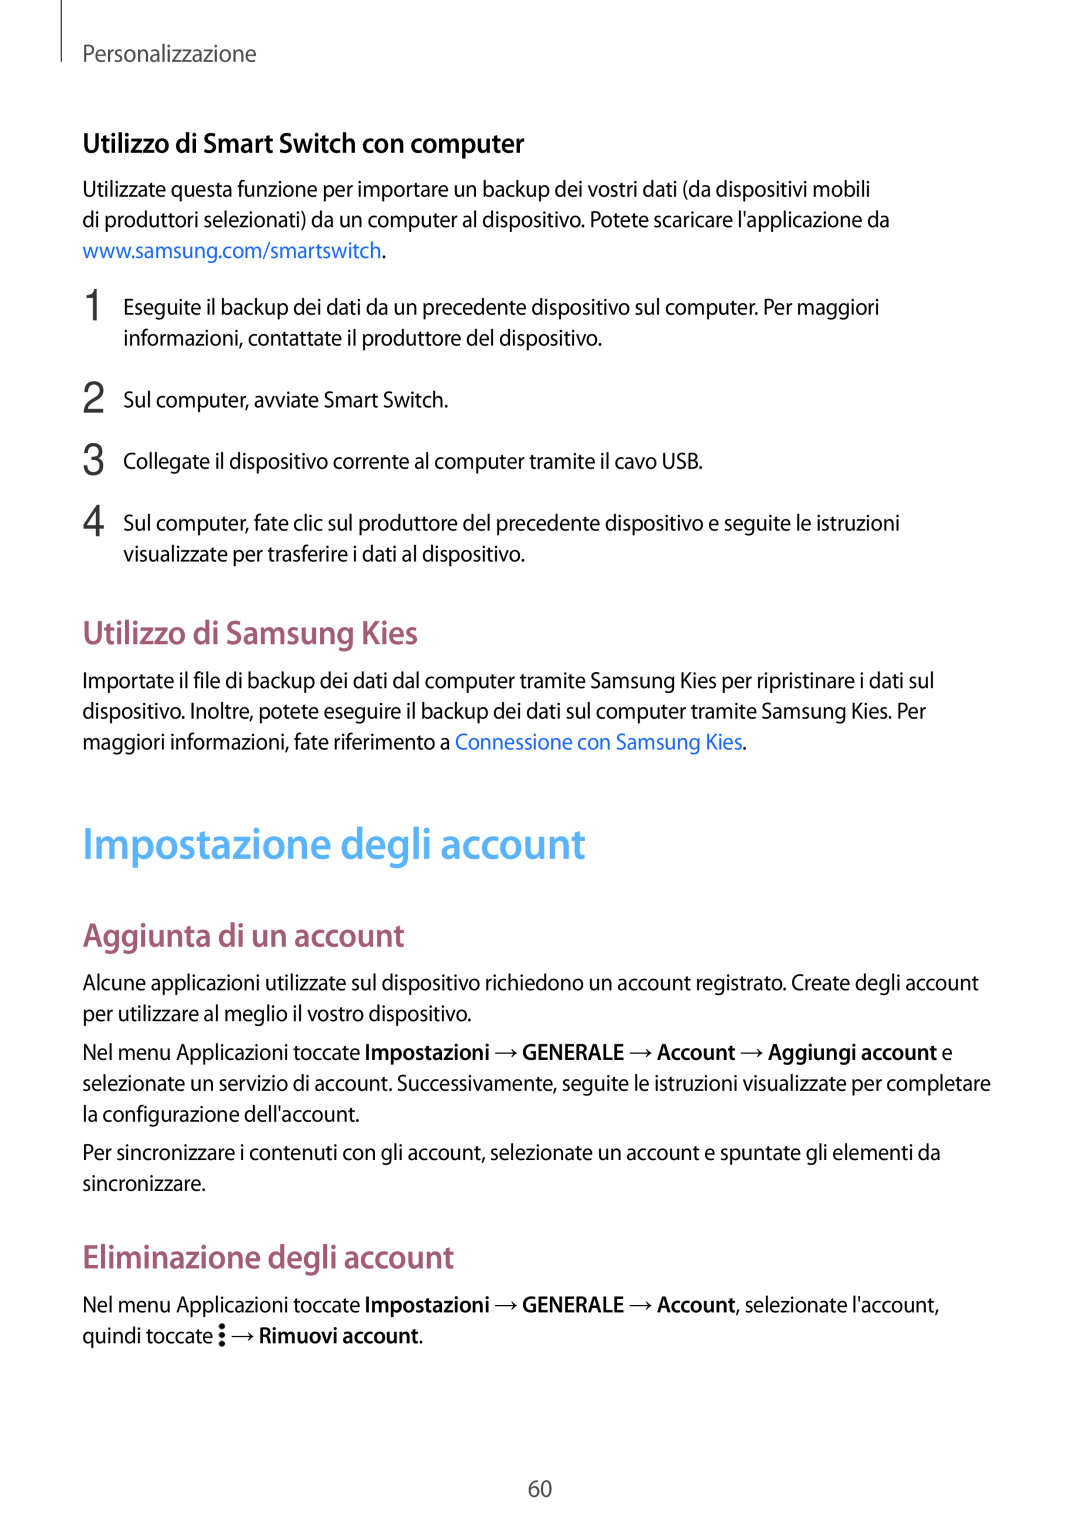 Samsung SM-T700NZWATUR Impostazione degli account, Utilizzo di Samsung Kies, Aggiunta di un account, Personalizzazione 